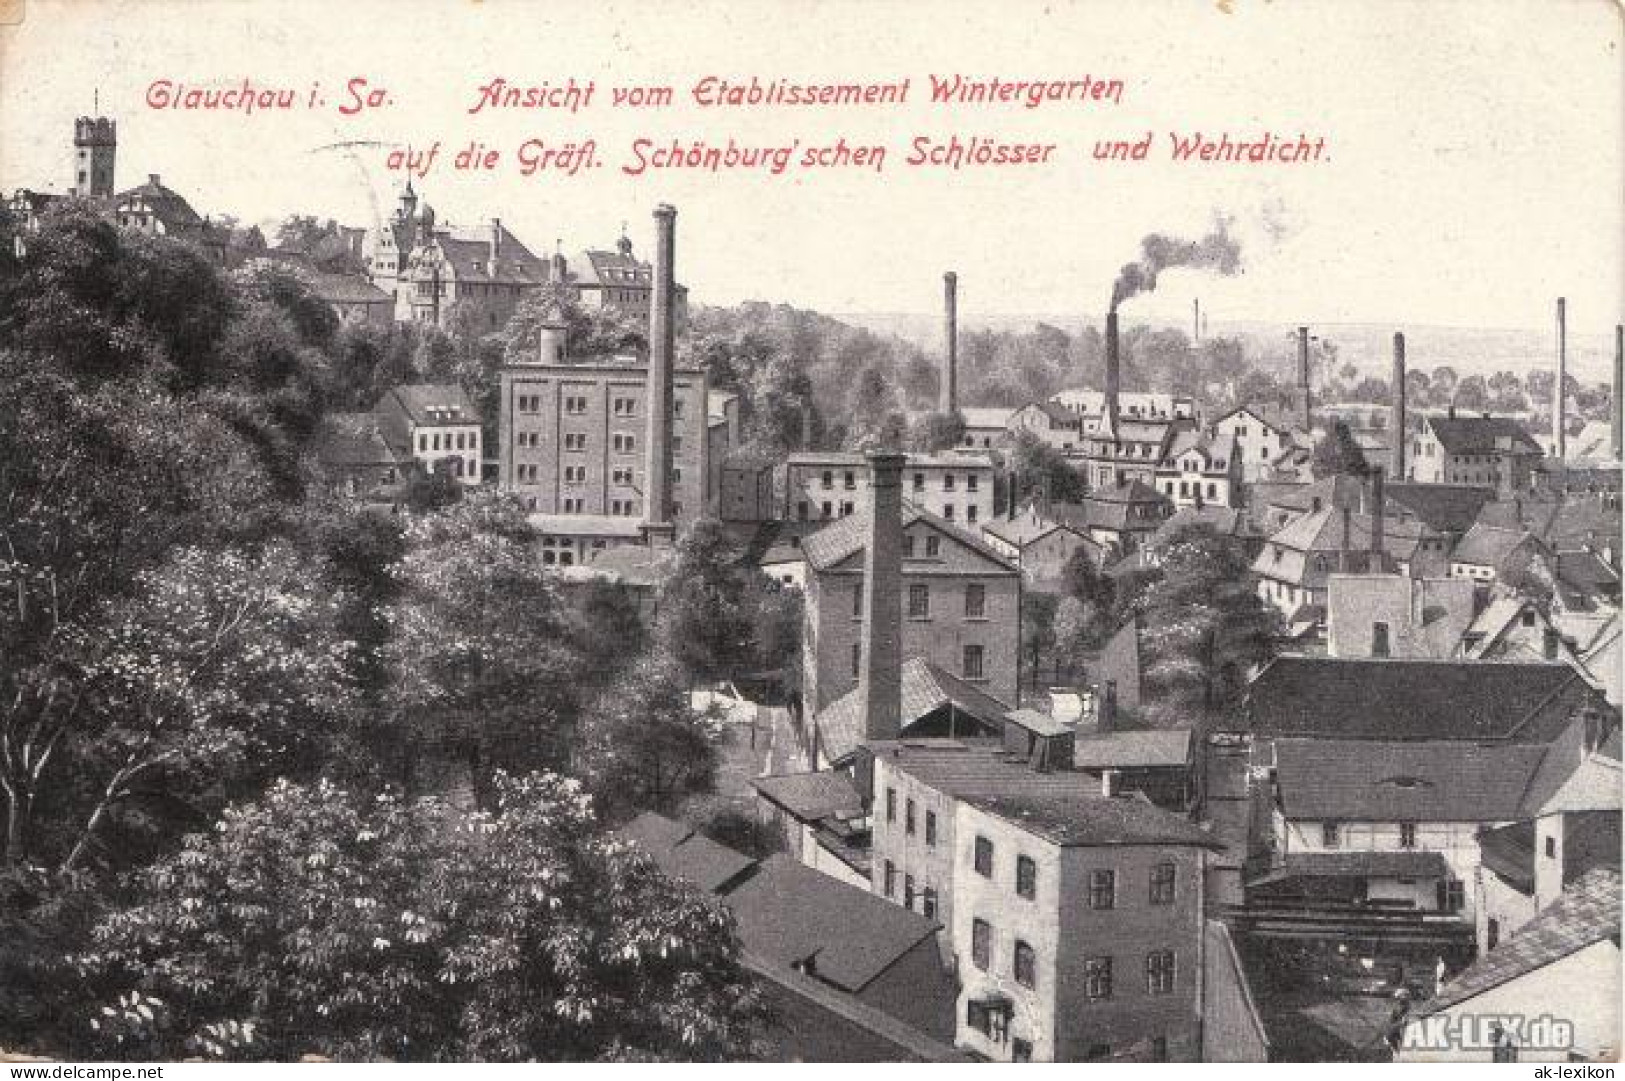 Glauchau Blick Auf Die Gräfl. Schönburg'schen Schlösser Und Wehrdicht C1918 1918 - Glauchau